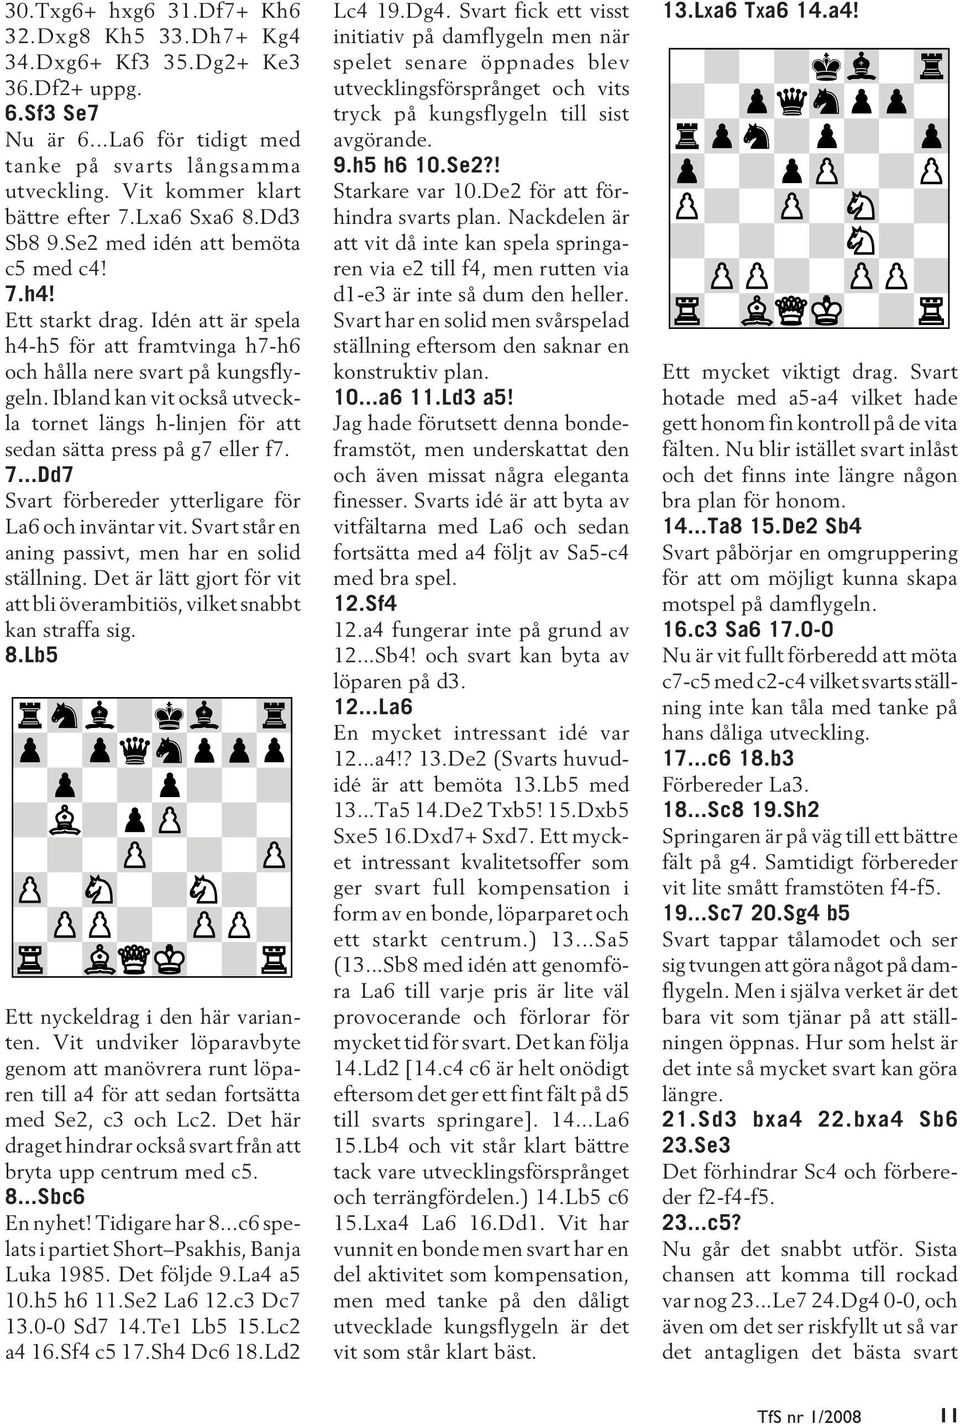 Ibland kan vit också utveckla tornet längs h-linjen för att sedan sätta press på g7 eller f7. 7...Dd7 Svart förbereder ytterligare för La6 och inväntar vit.